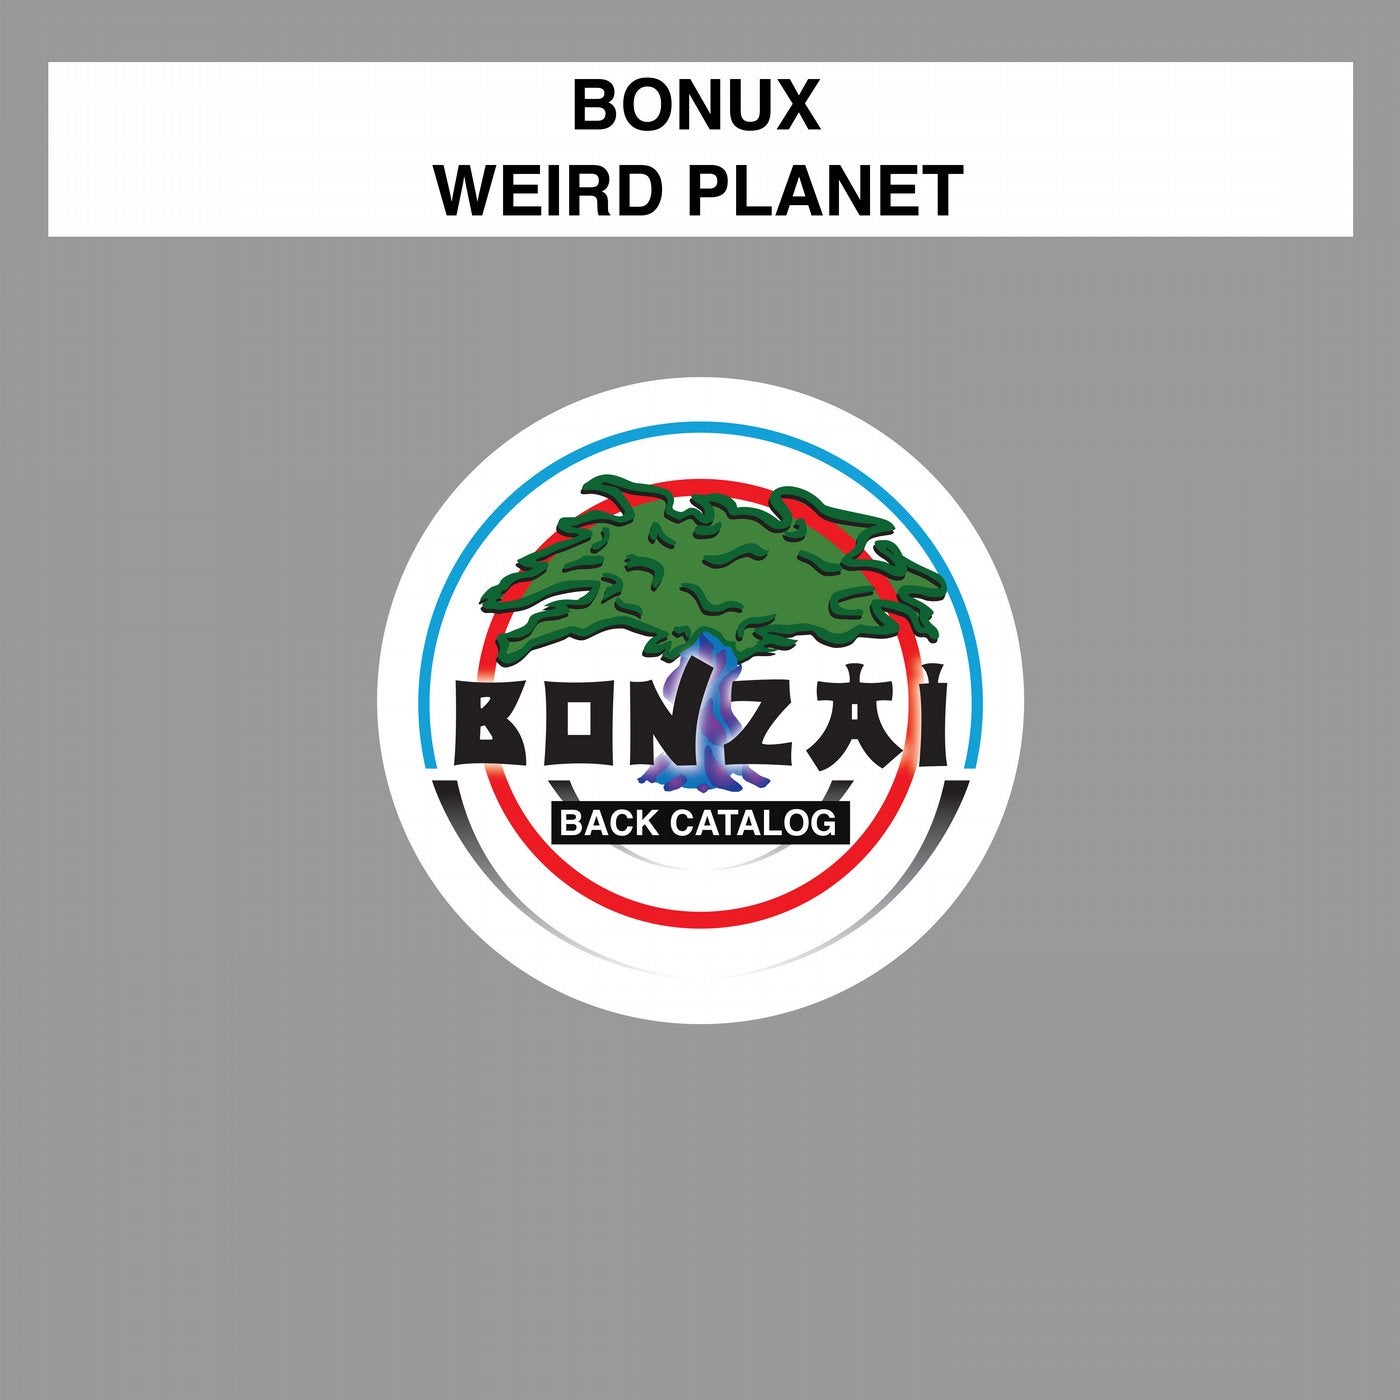 Weird Planet